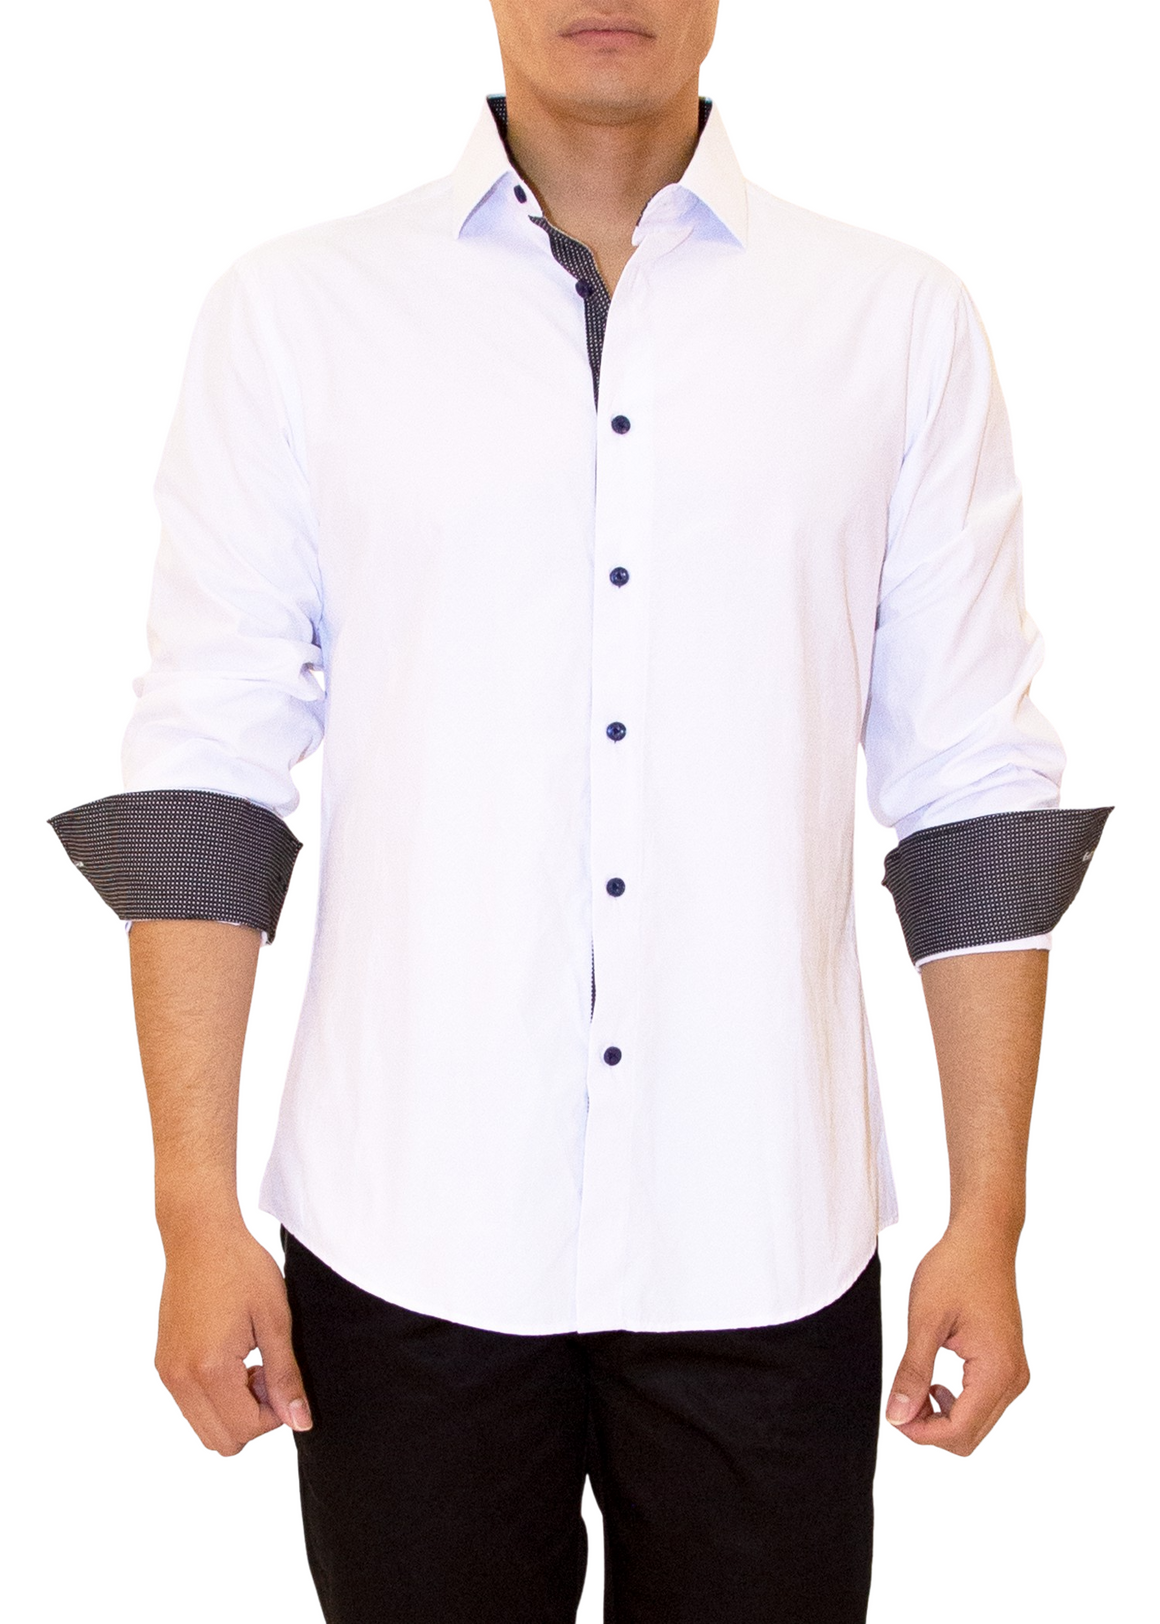 Men's Long Sleeves Shirt | Modern Fit European Design | Navy, White | 192533